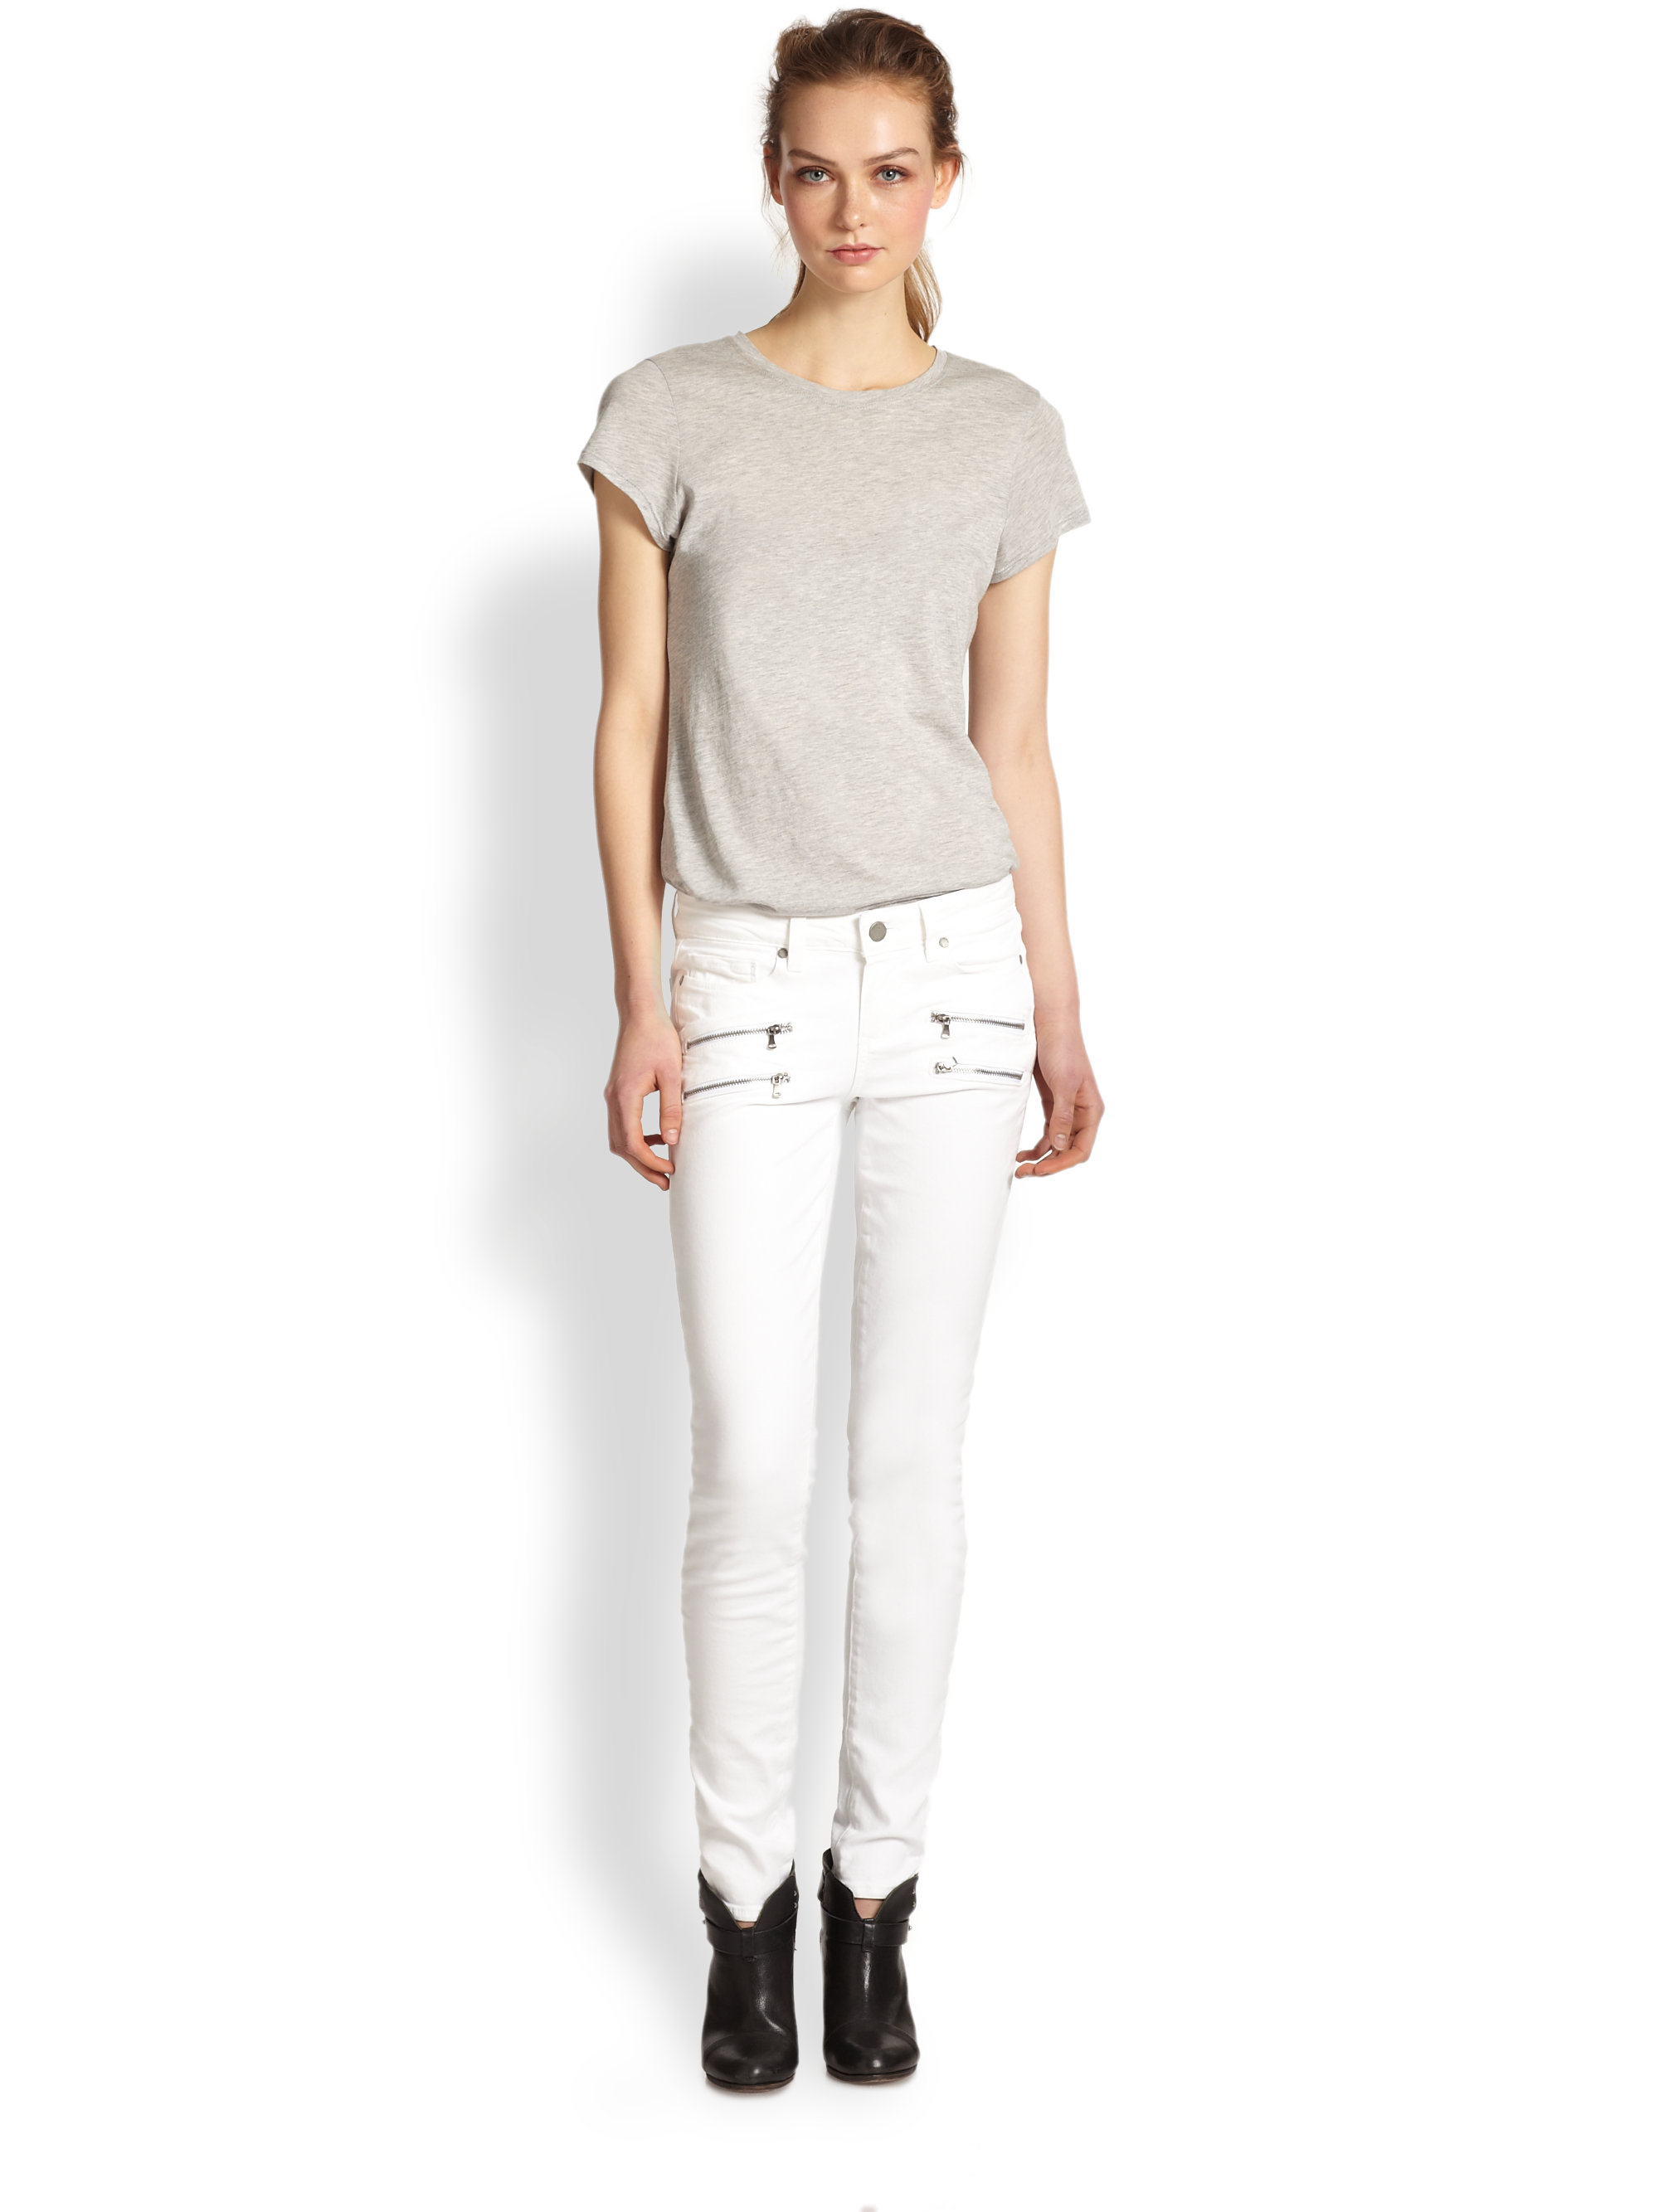 paige white jeans